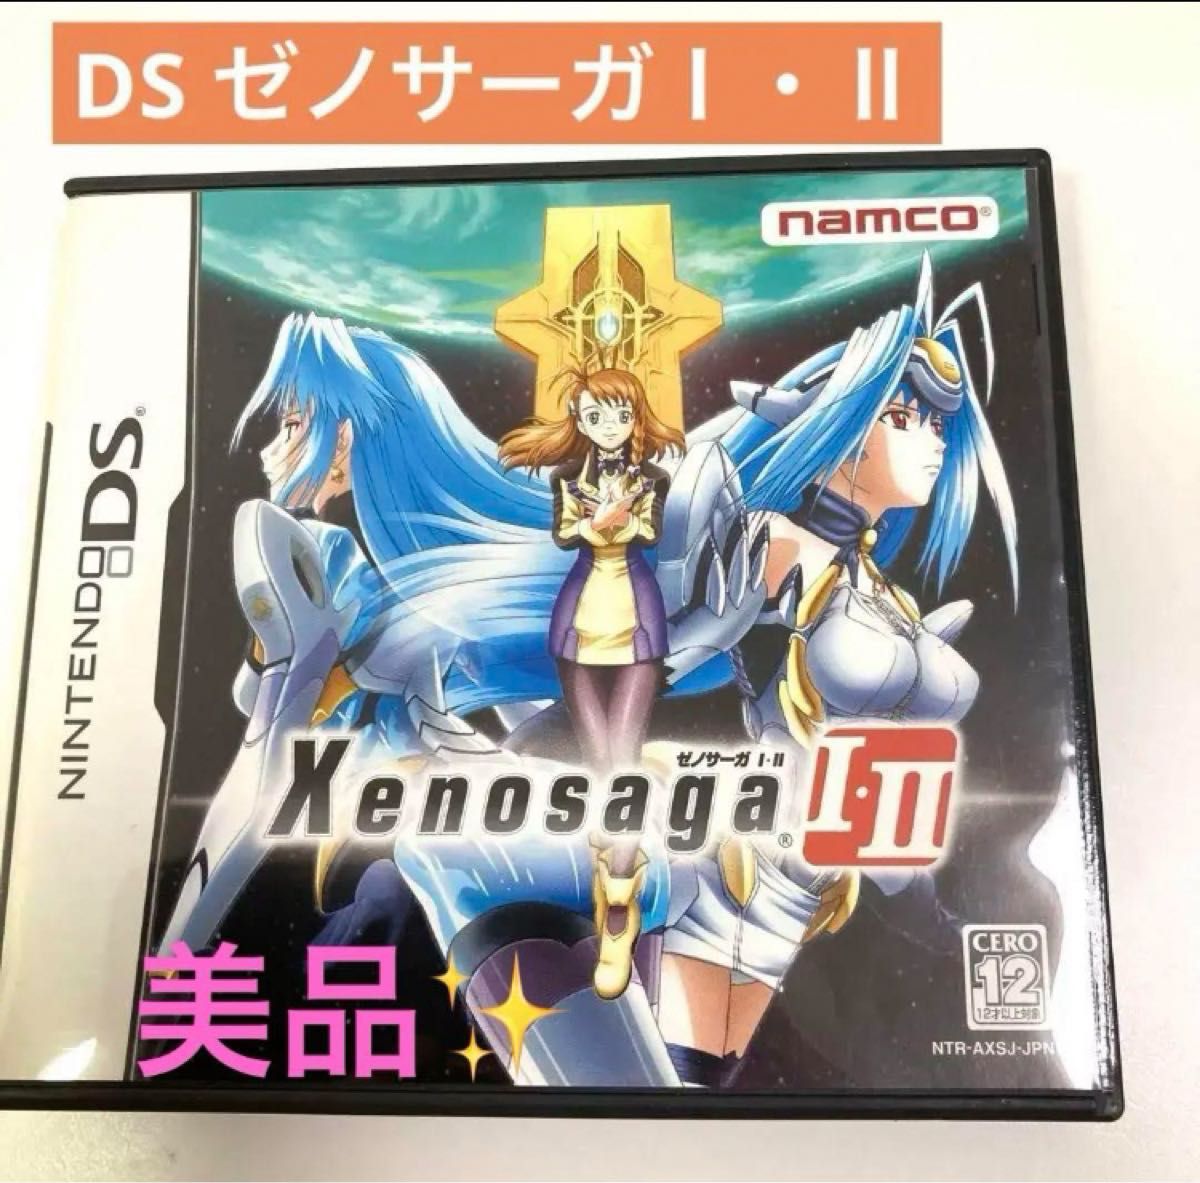 ゼノサーガ 1・2  Xenosaga Ⅰ・Ⅱ DS  ニンテンドー ナムコ 